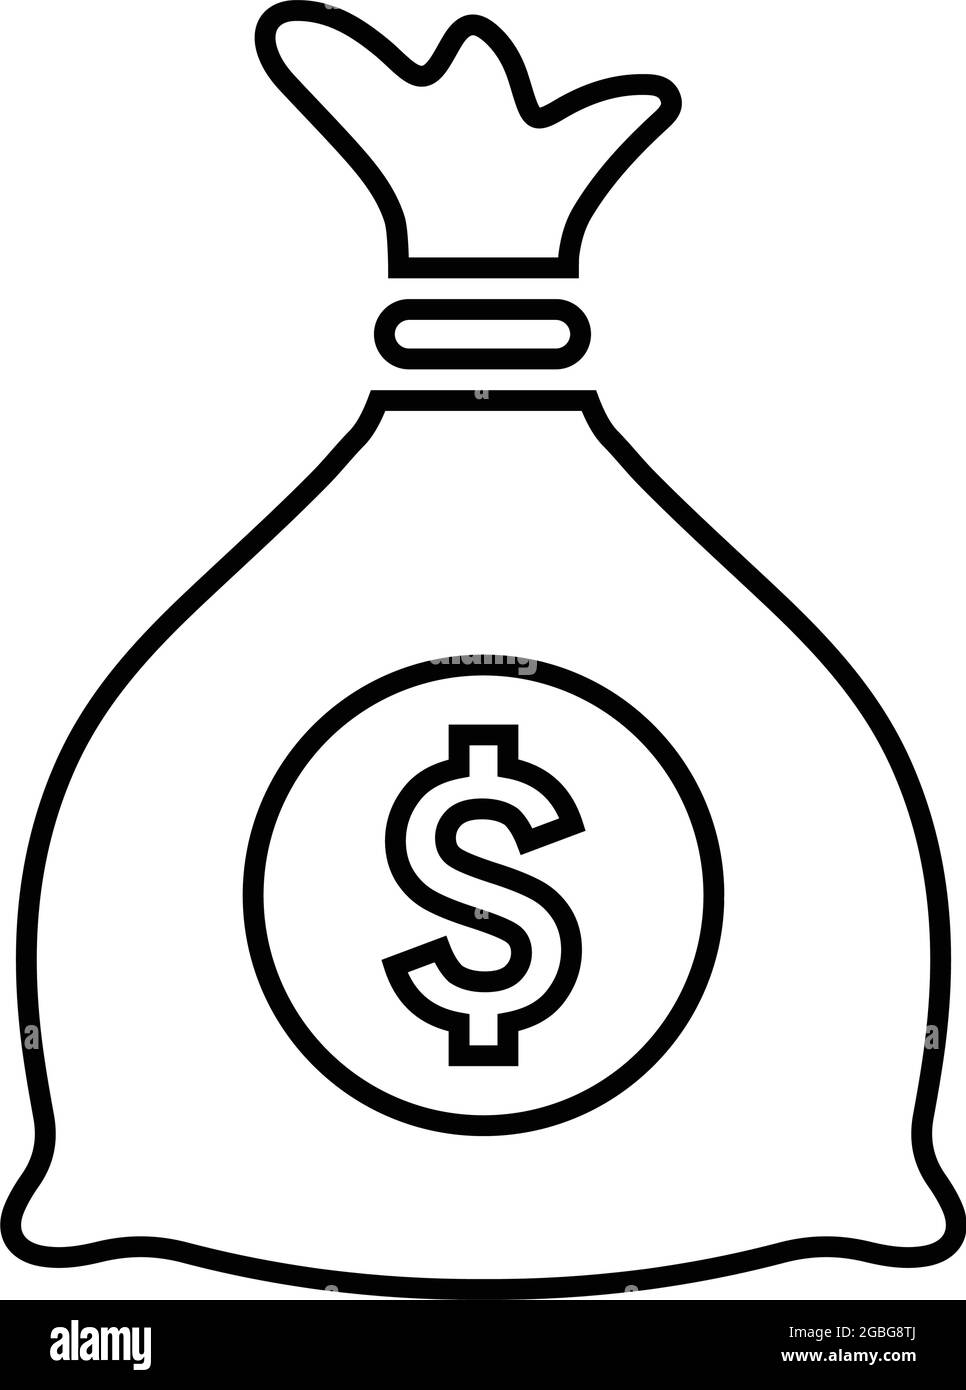 Tasche, Dollar, Geld Symbol - Verwenden Sie für kommerzielle Zwecke, Printmedien, Web oder jede Art von Design-Projekten. Vektor-EPS-Datei. Stock Vektor